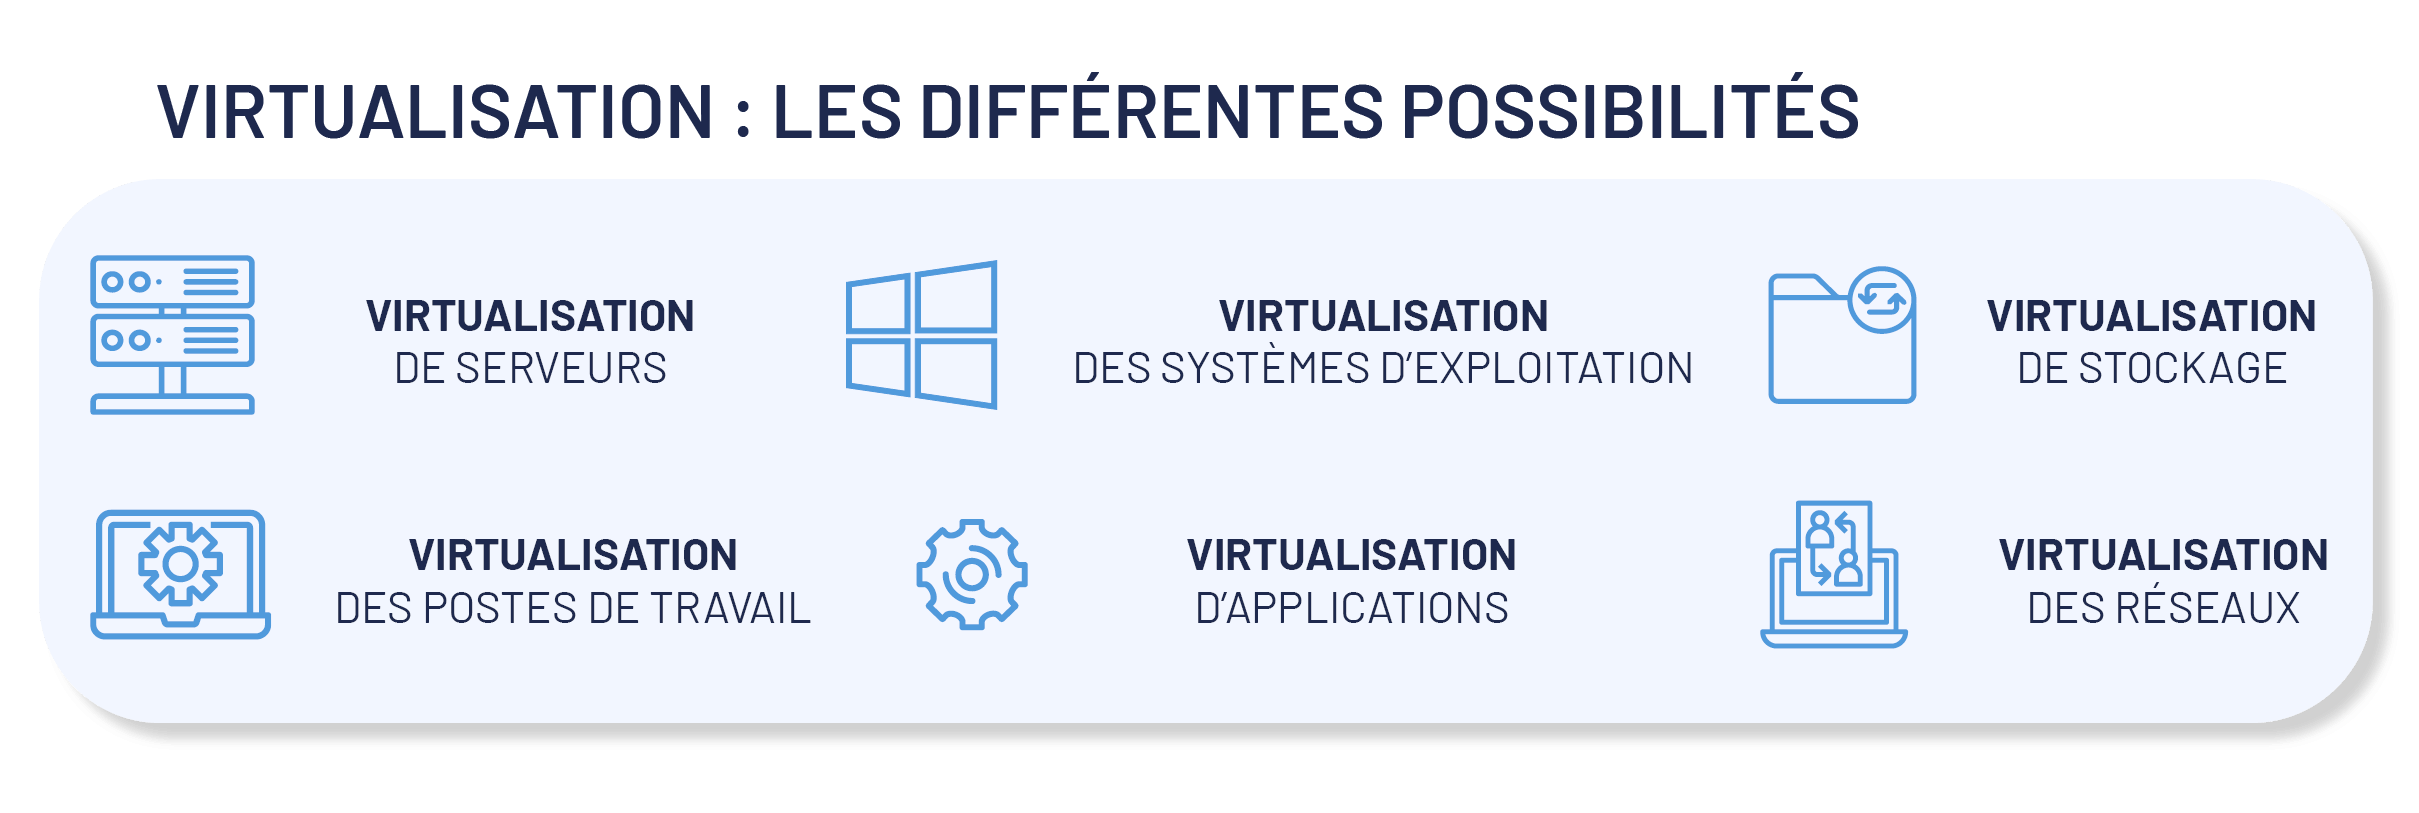 Les différents types de virtualisation